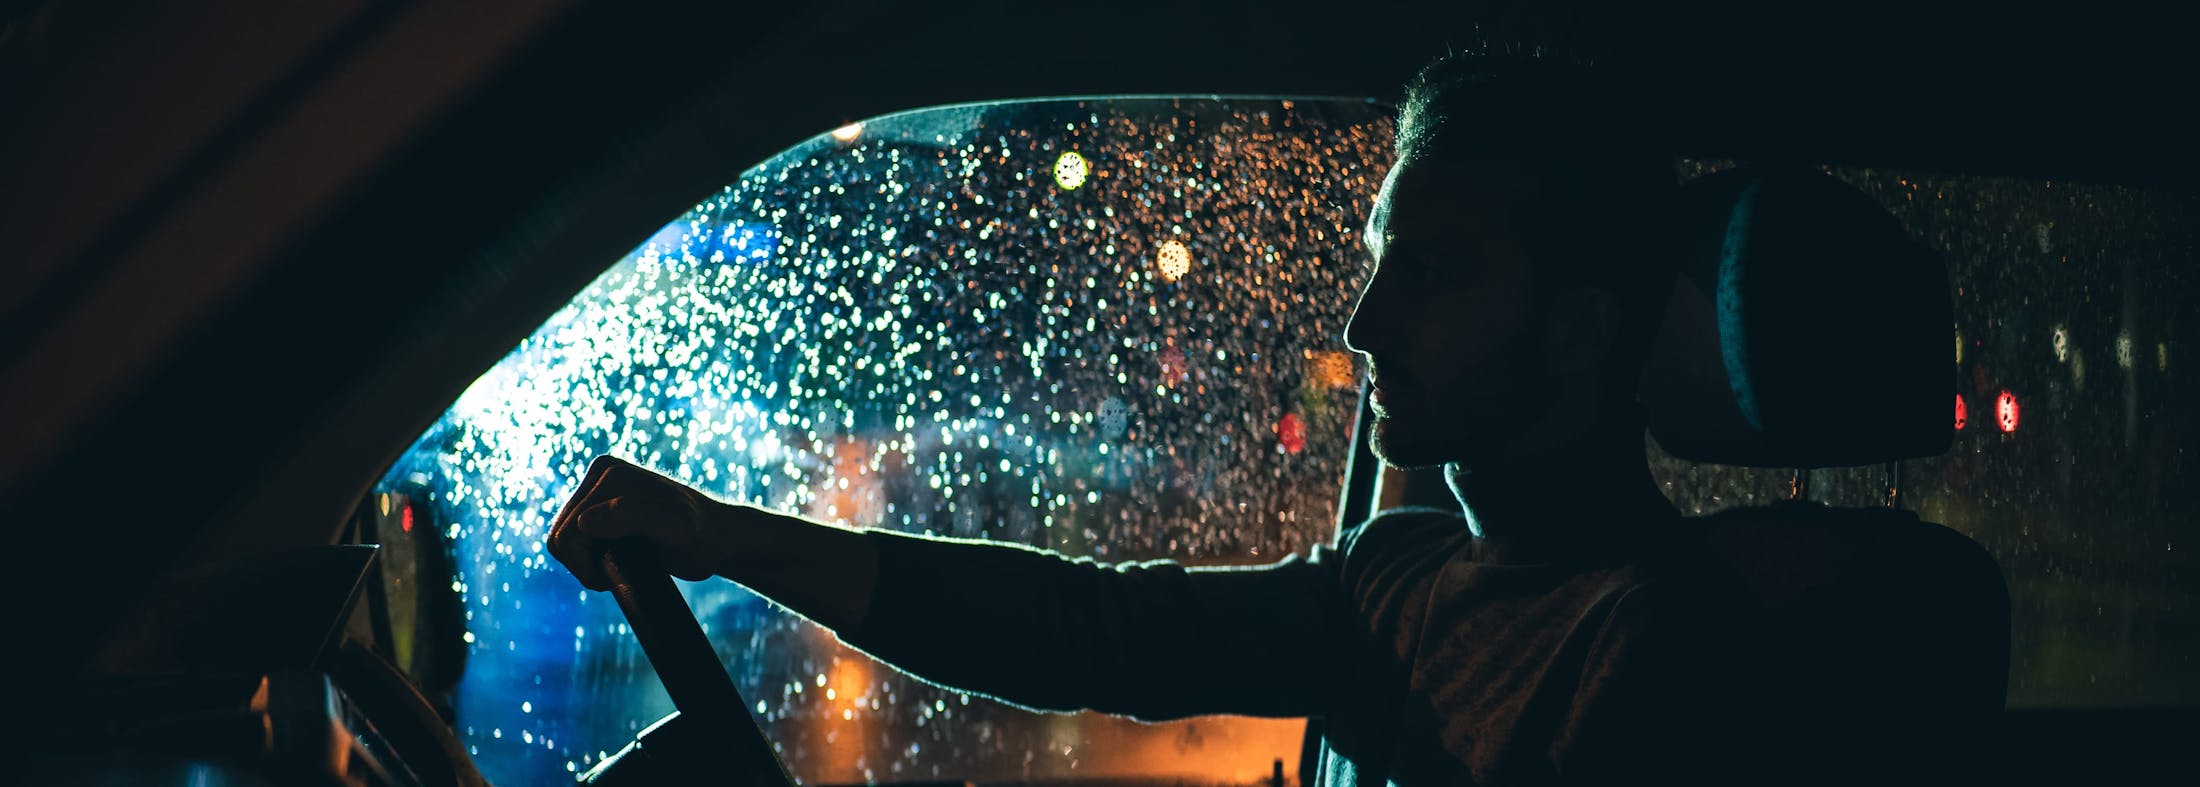 Man behind the wheel at night